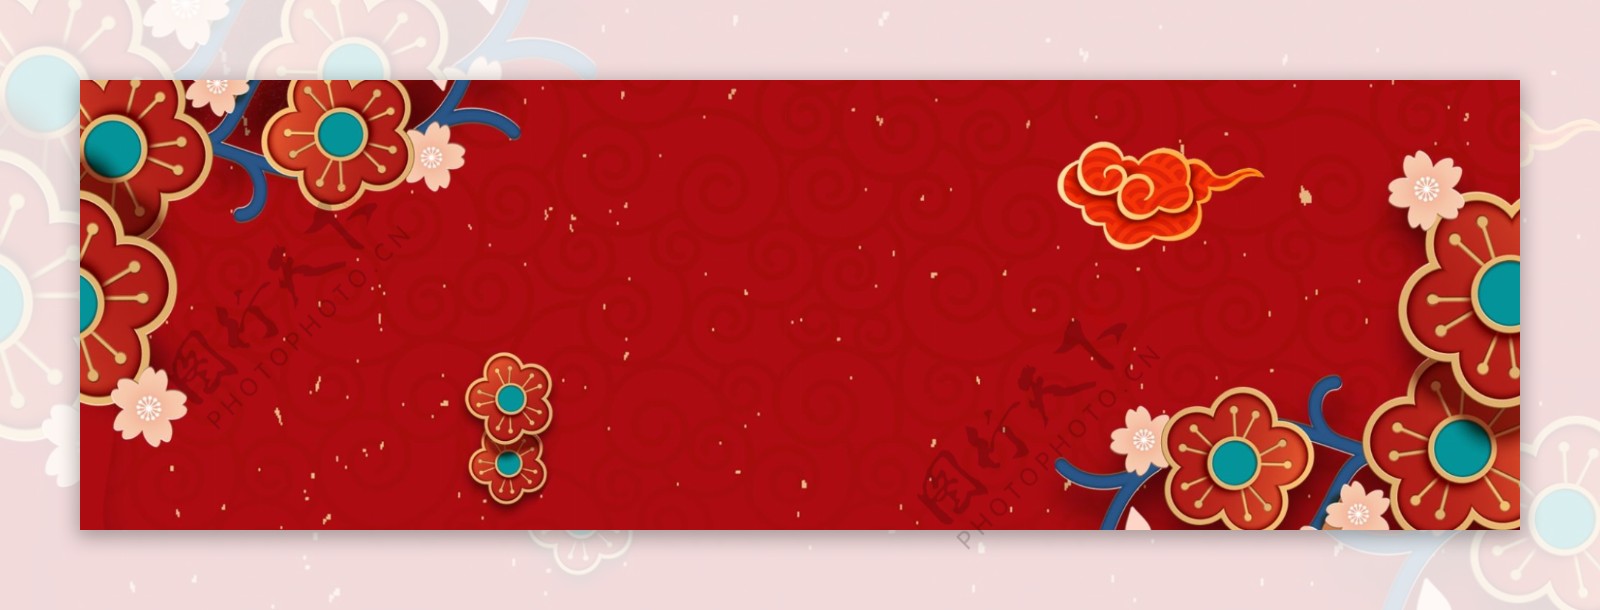 创意中国风传统节日banner背景